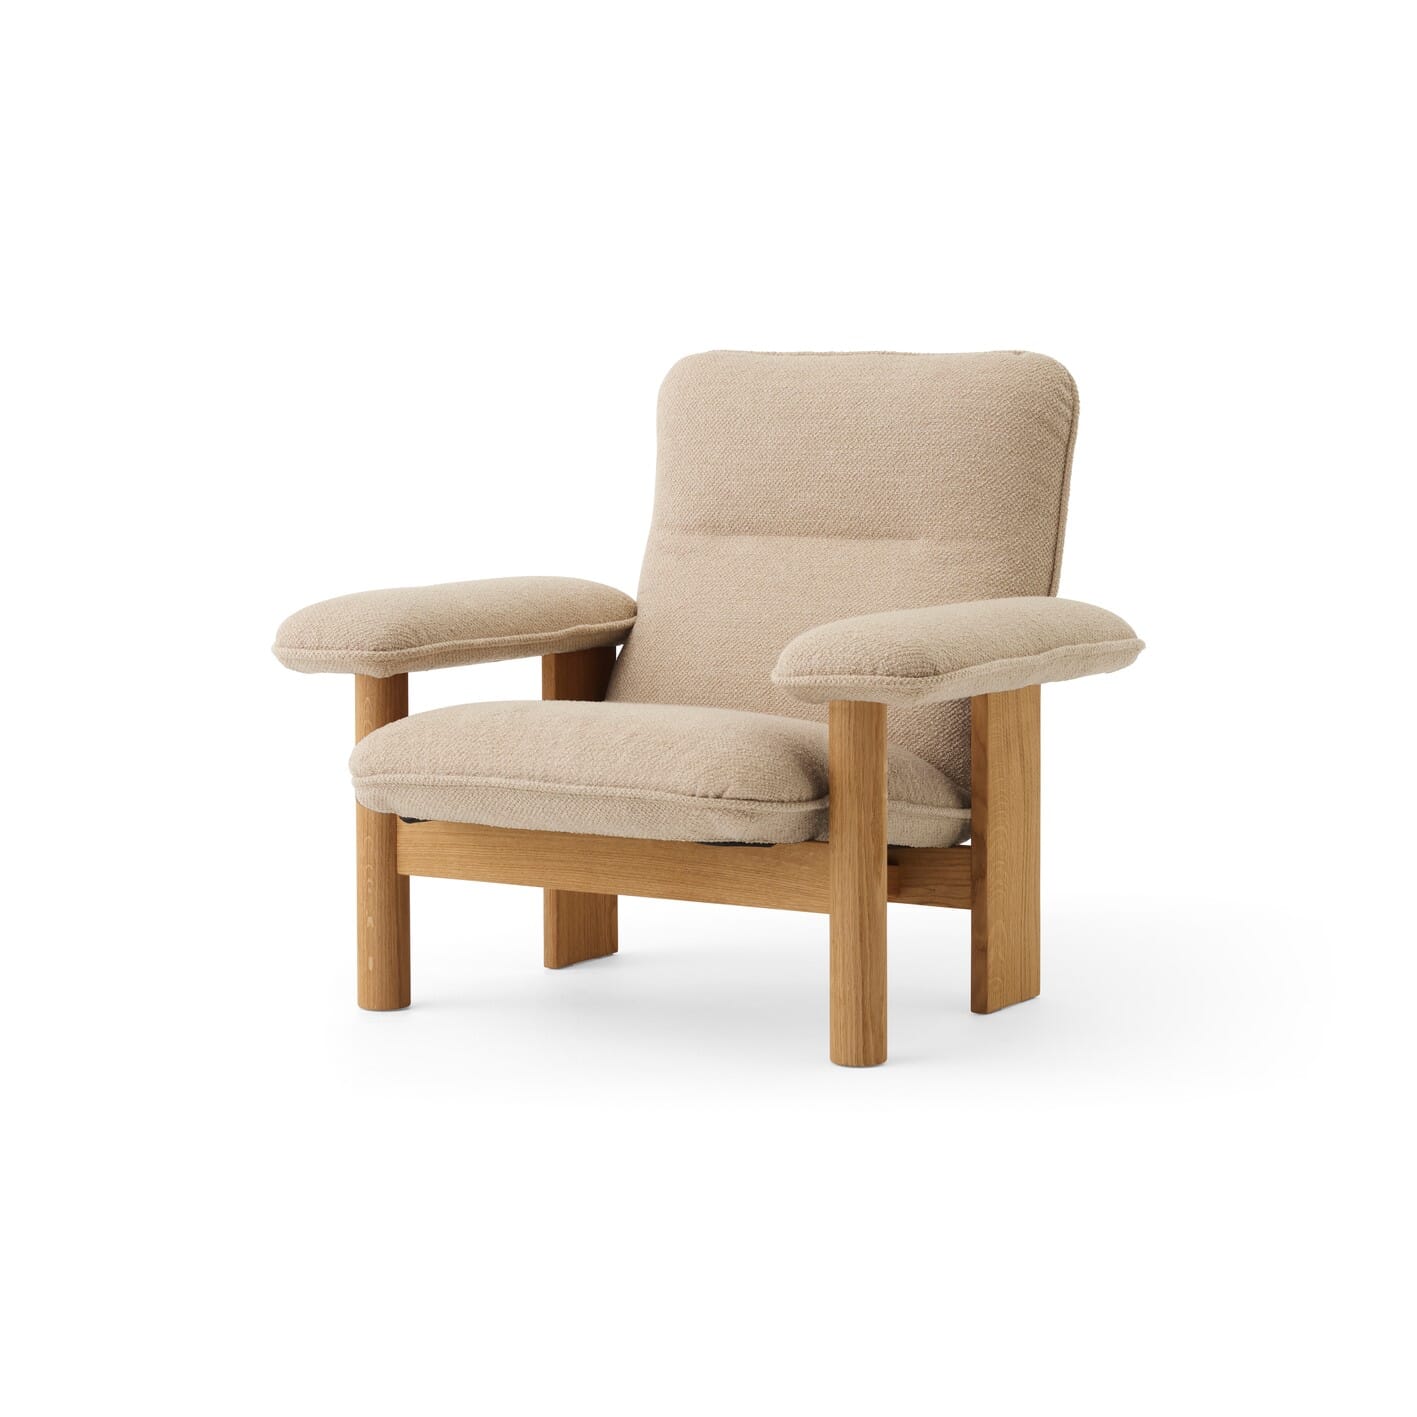 Bilde av Audo Copenhagen - Audo Copenhagen Brasilia Lounge Chair Eik/boucle Beige - Lunehjem.no - Interiør På Nett